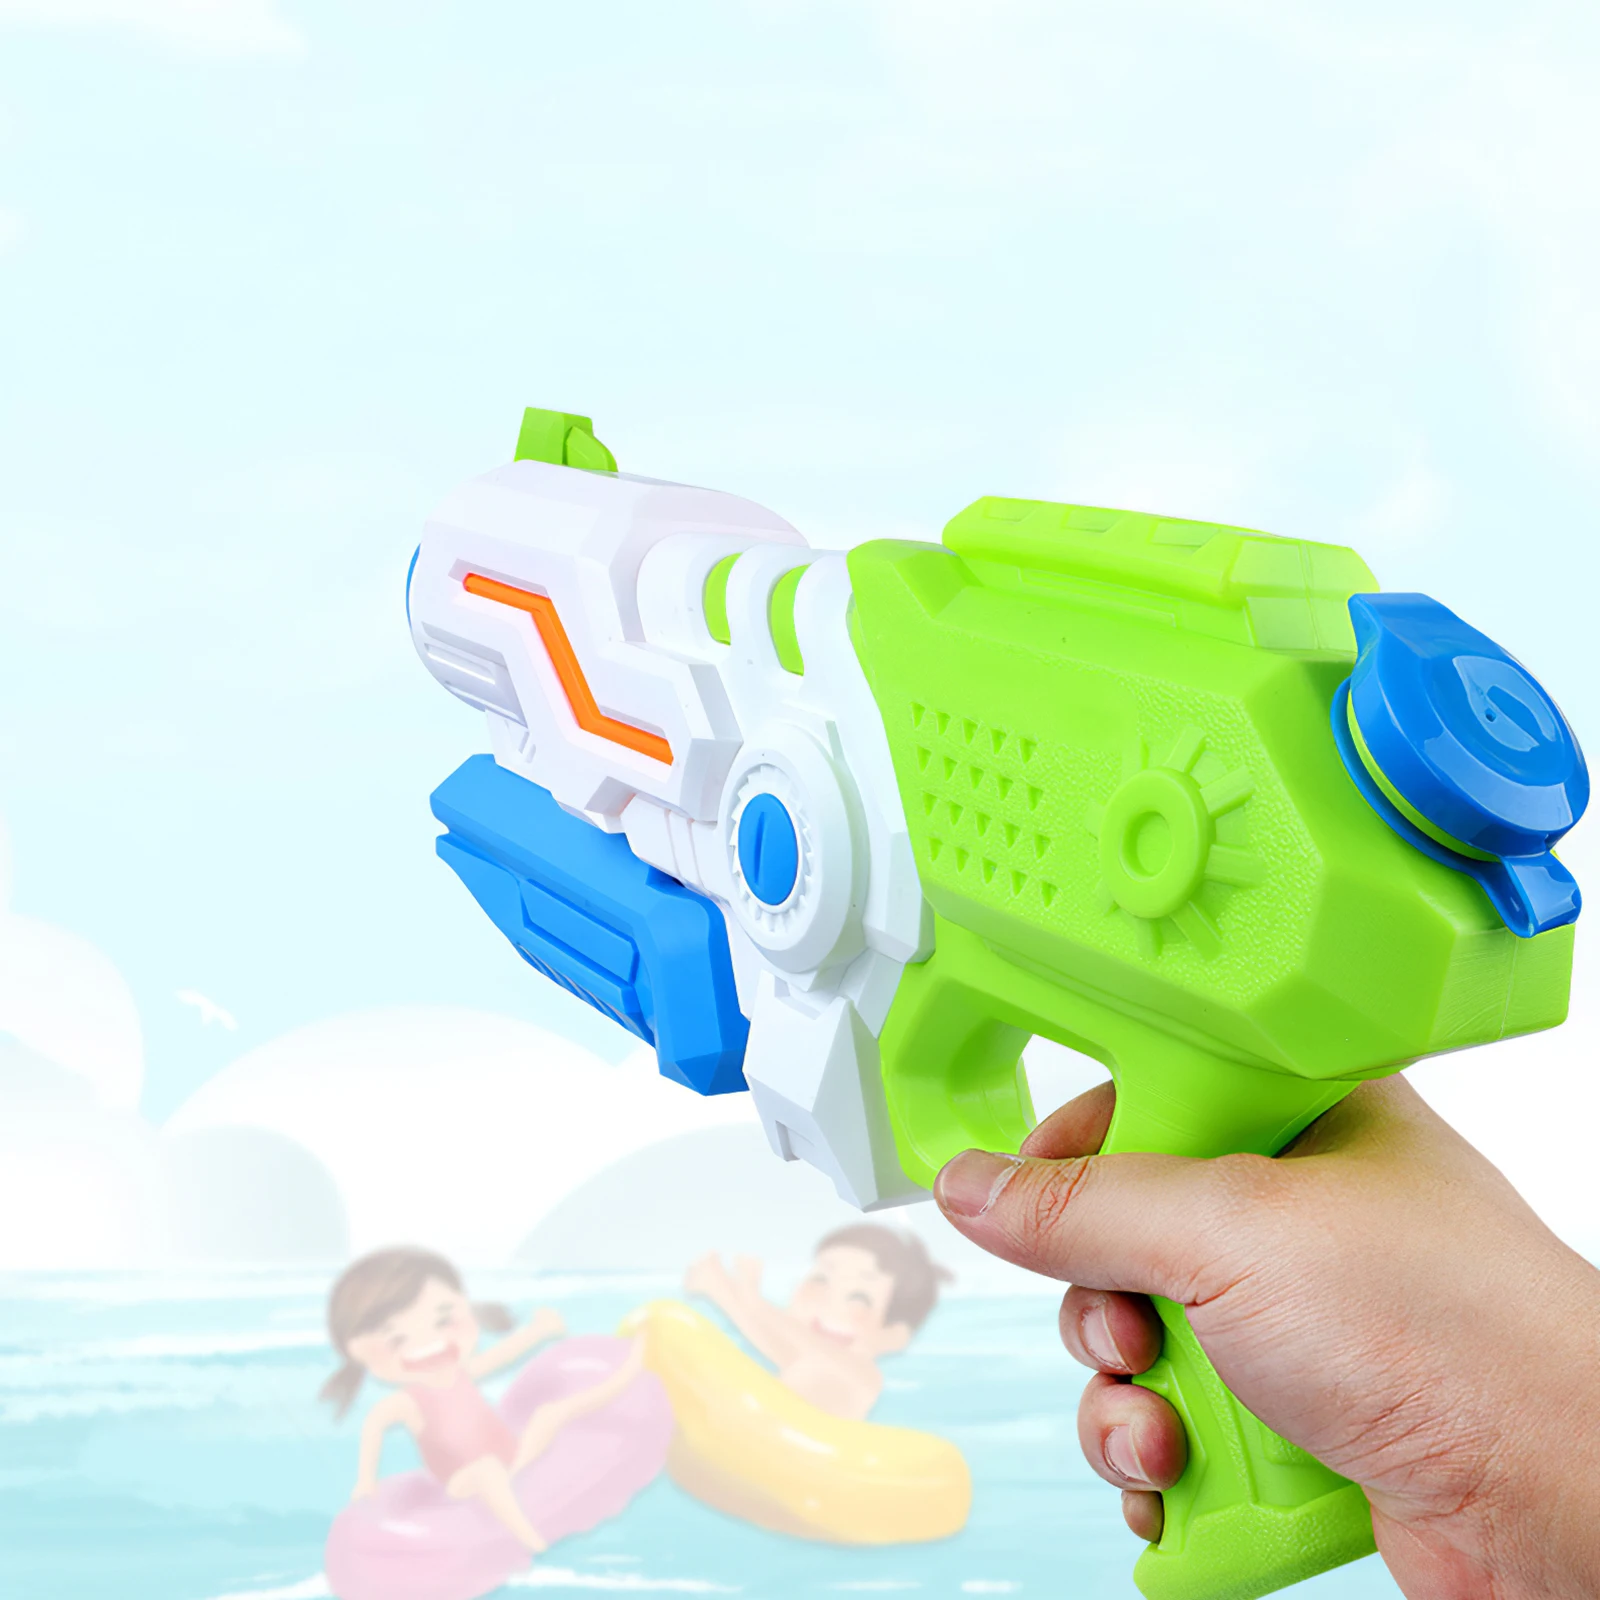 

Водяной пистолет-бластер, игрушечный пистолет-брызгалка, Детские пистолеты, водяной пистолет, игрушка для игр в воде, летняя игра-стрельба, ...